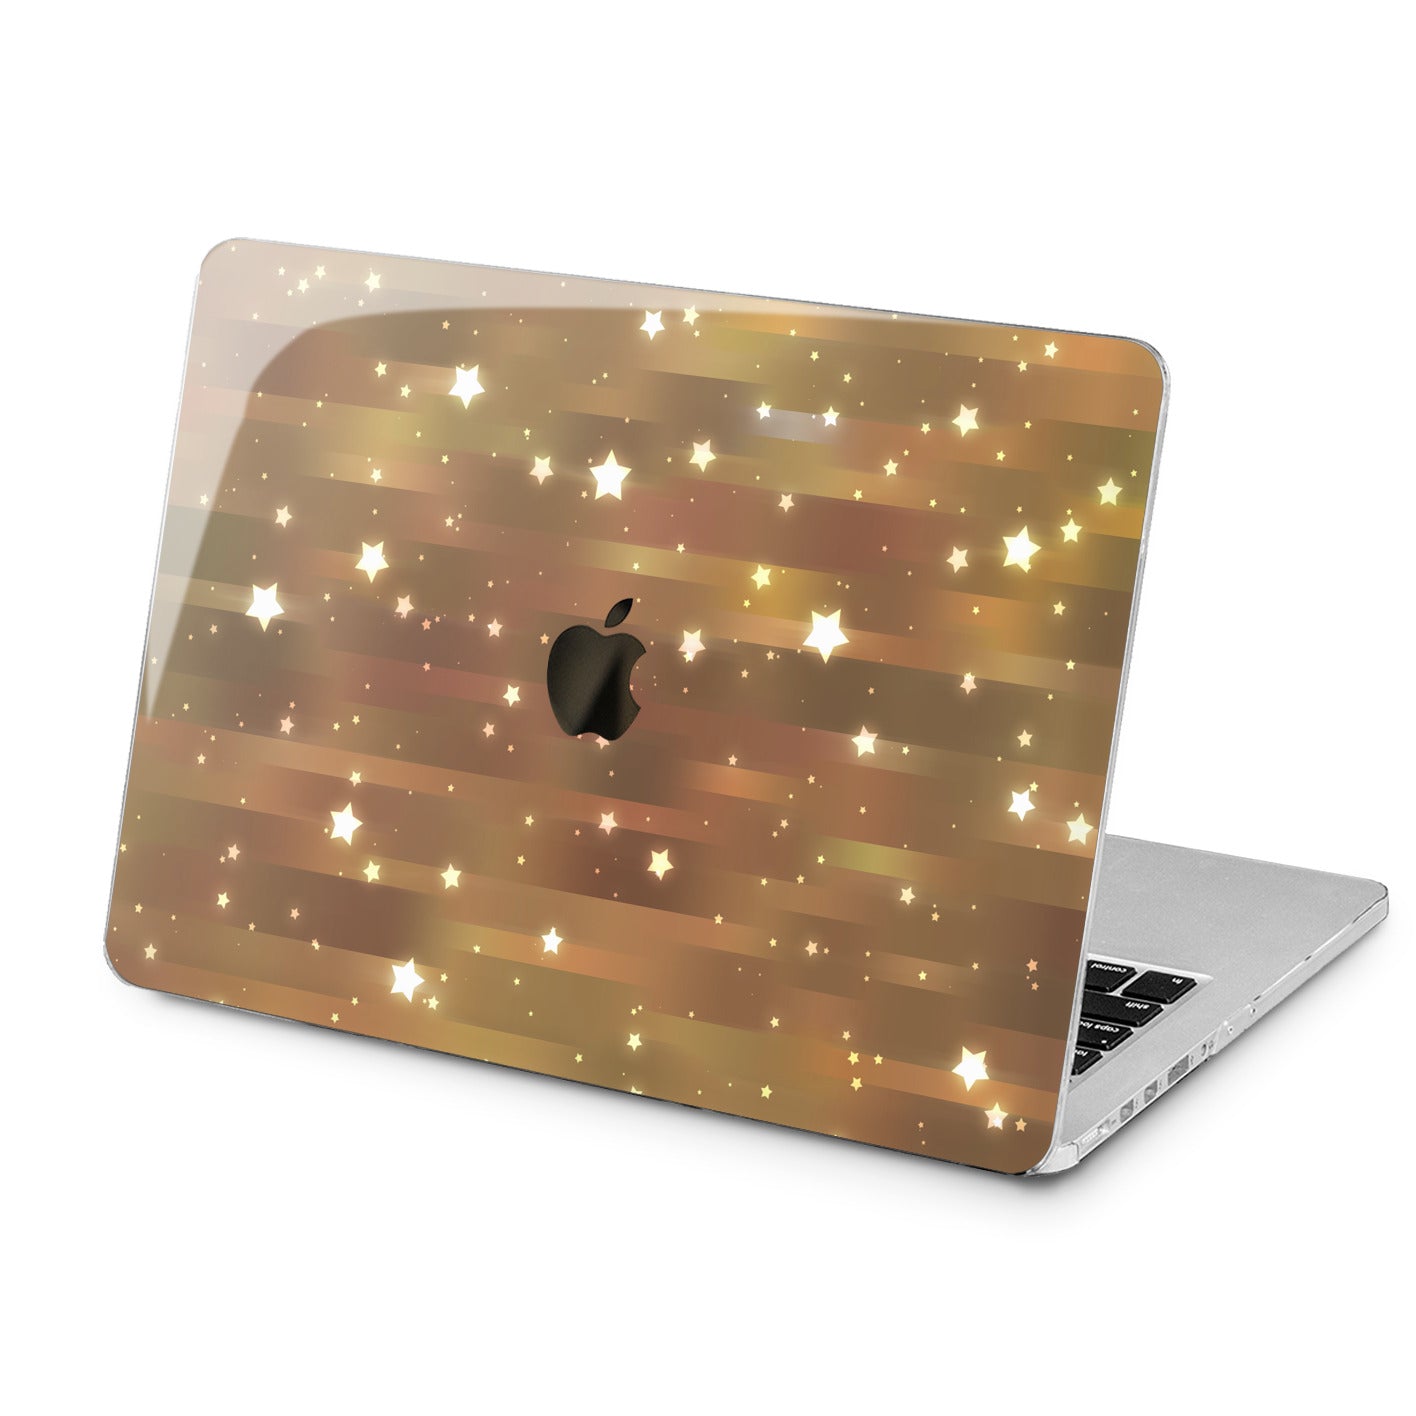 Lex Altern Lex Altern White Stars Case for your Laptop Apple Macbook.